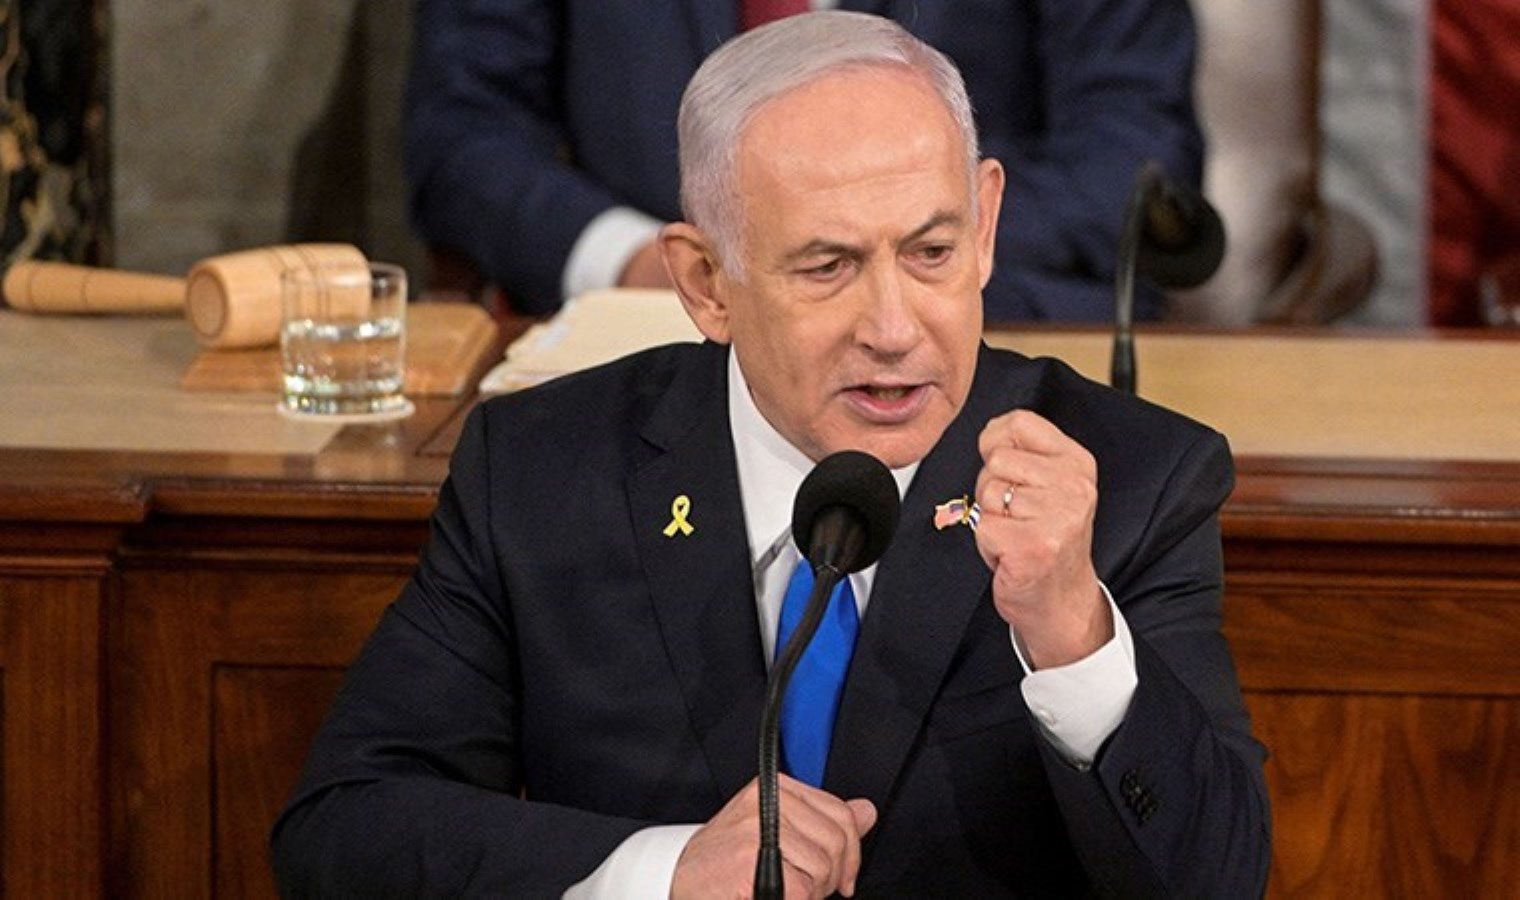 Netanyahu ABD Kongresi’nde konuştu, göstericiler için ‘İran’ın kullanışlı aptalları’ dedi